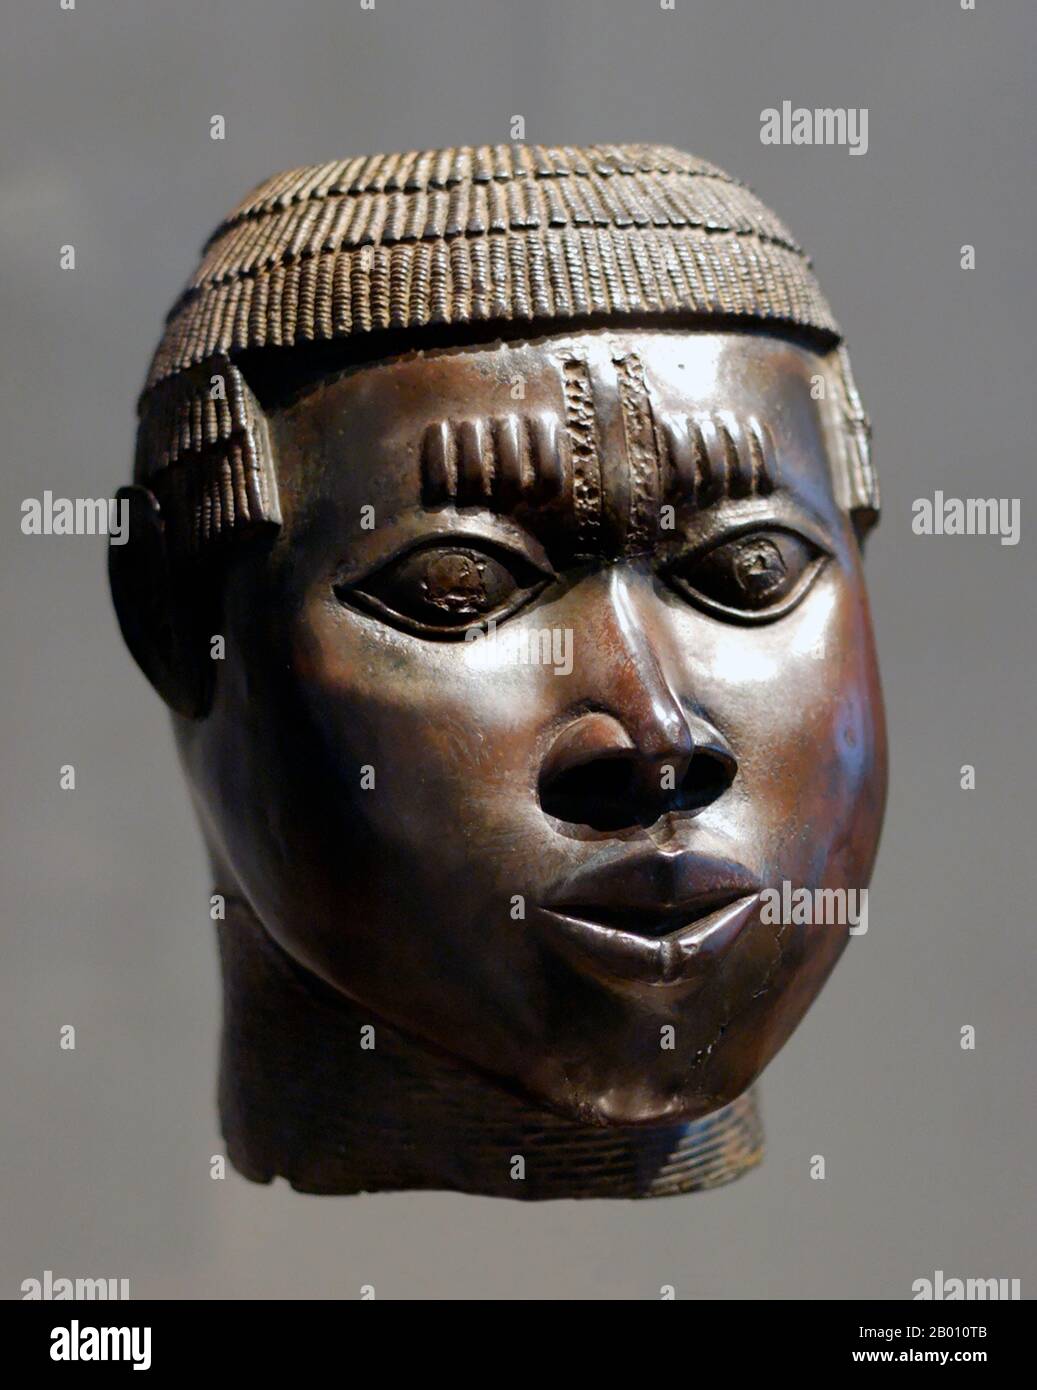 Nigeria: Escultura del Reino de Benin. Bronce fundido de cera perdida, Nigeria, finales de 15th-mediados del siglo 16th. El Imperio de Benin (1440–1897) fue un estado africano pre-colonial en lo que ahora es Nigeria moderna. No debe confundirse con el país de hoy en día llamado Benin (y anteriormente llamado Dahomey). Foto de stock